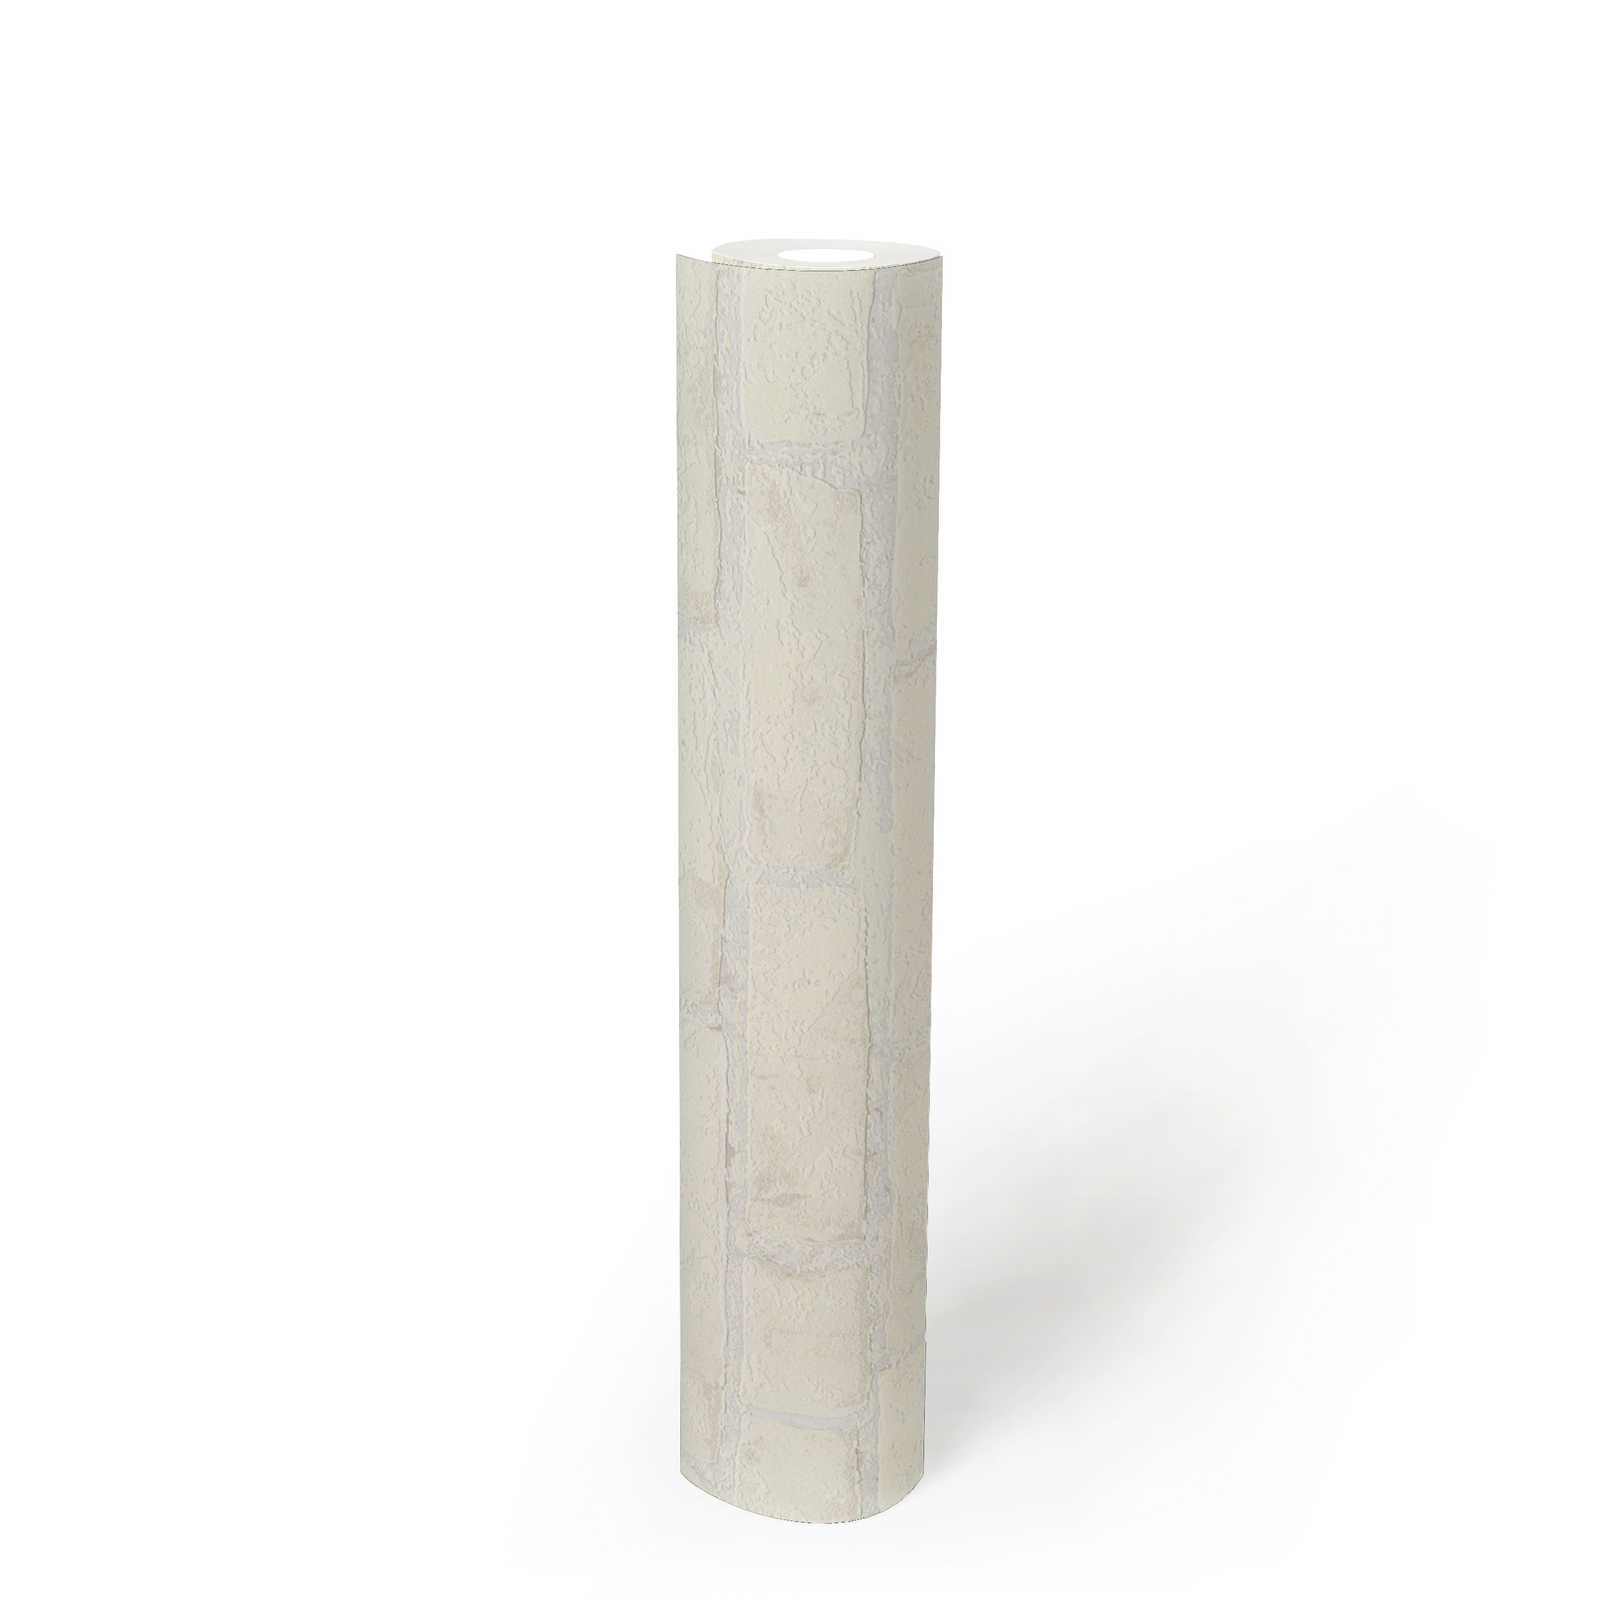             3D papier peint aspect pierre brique maçonnerie blanc
        